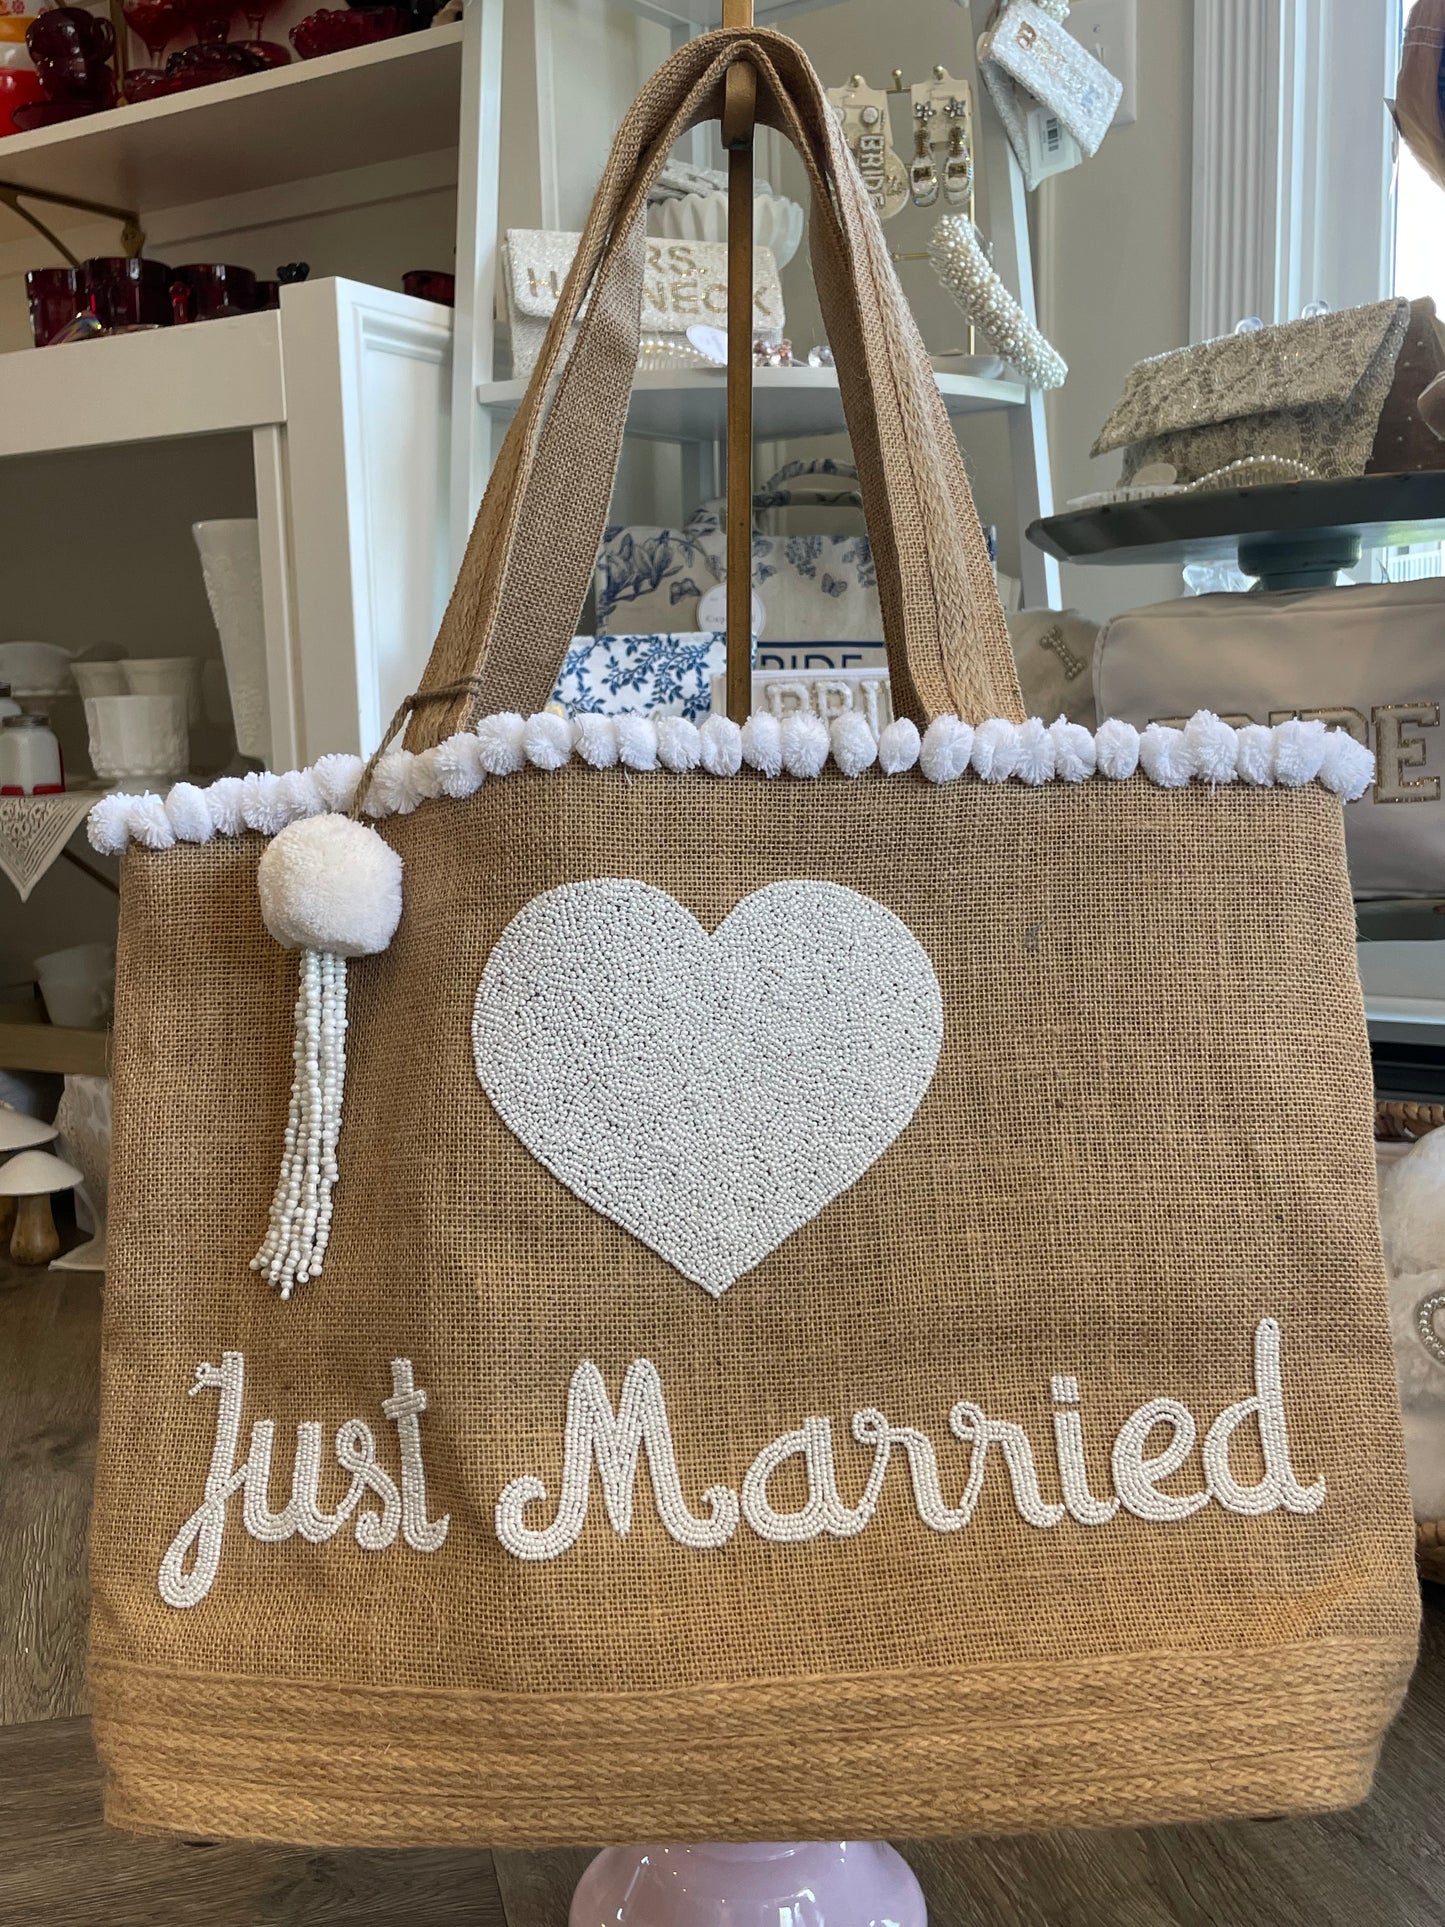 Just Married Jute Tote bag